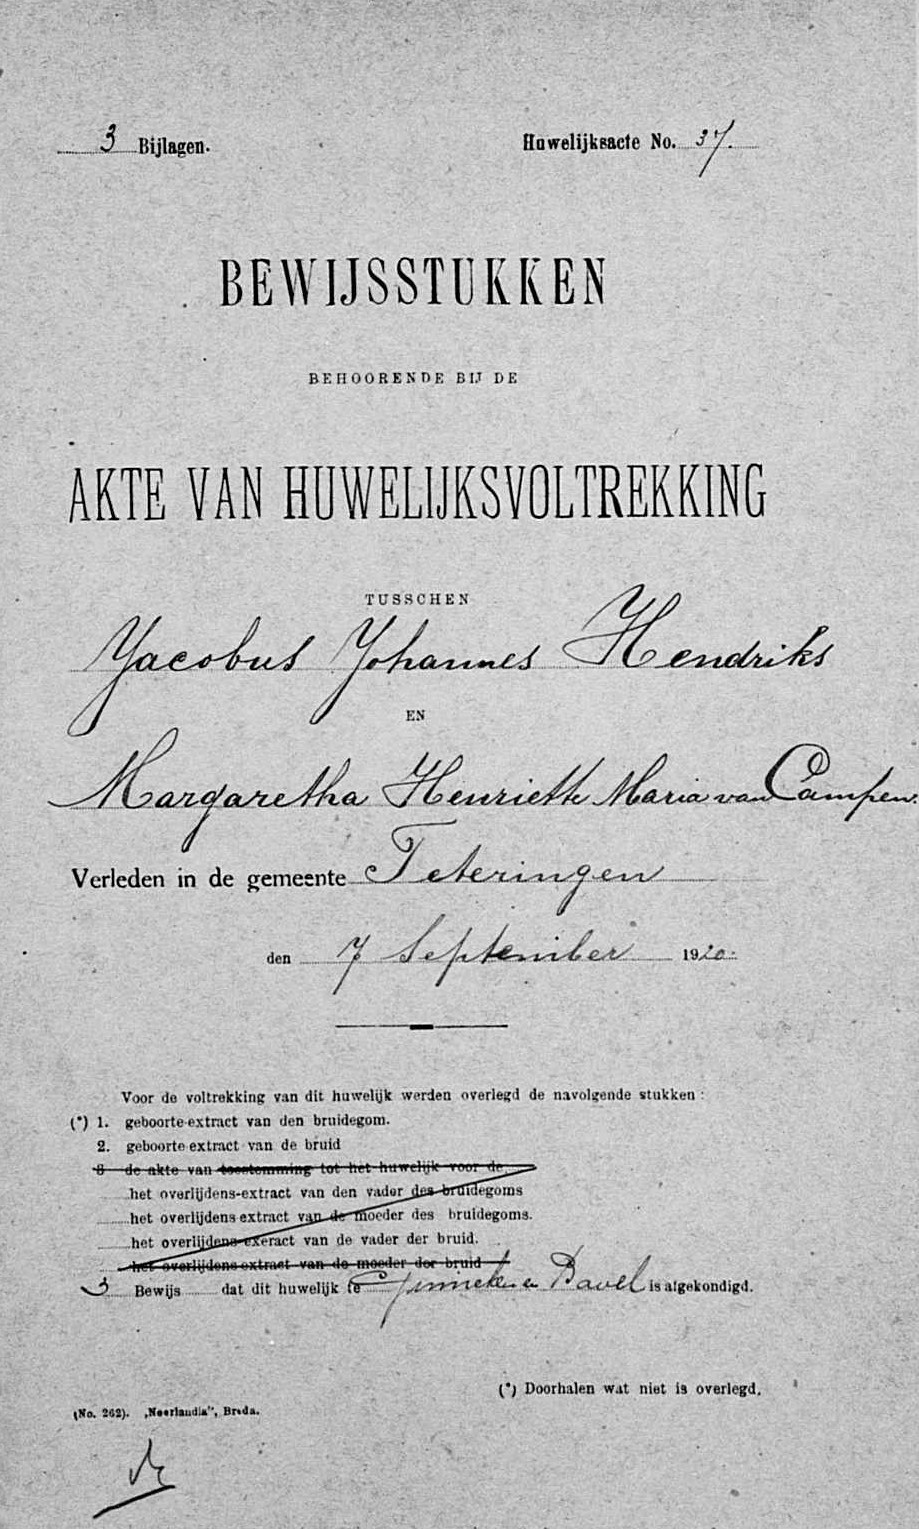  - huwelijksbijlage Teteringen 07-09-1920 - Jacobus Johannes Hendriks en Margaretha Henriette Maria van Campen